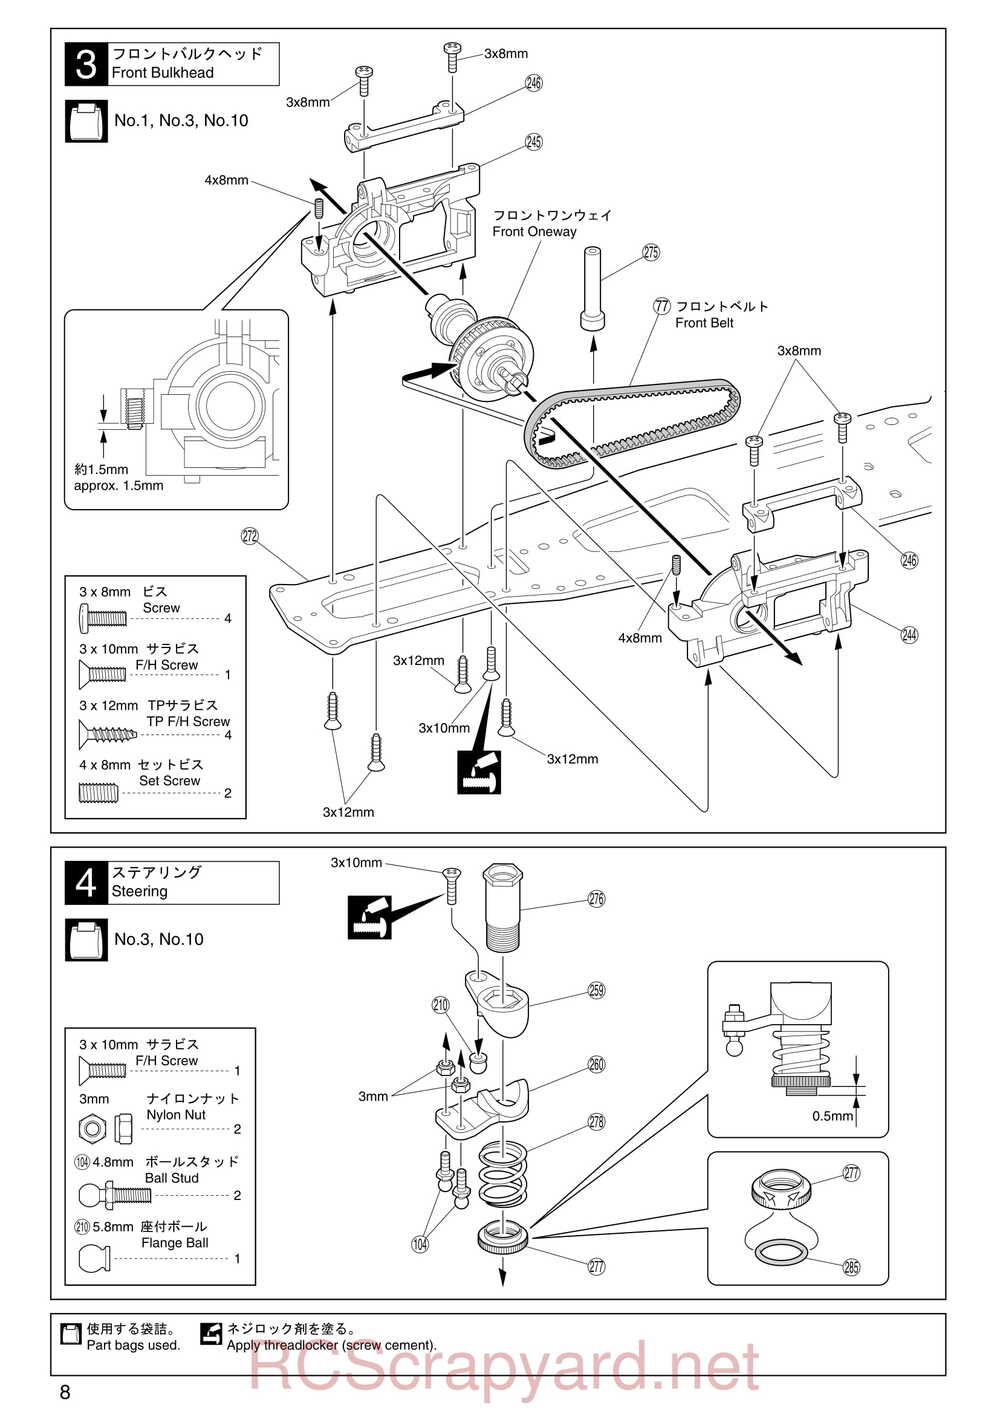 Kyosho - 31255 - V-One RR Evolution - Manual - Page 08